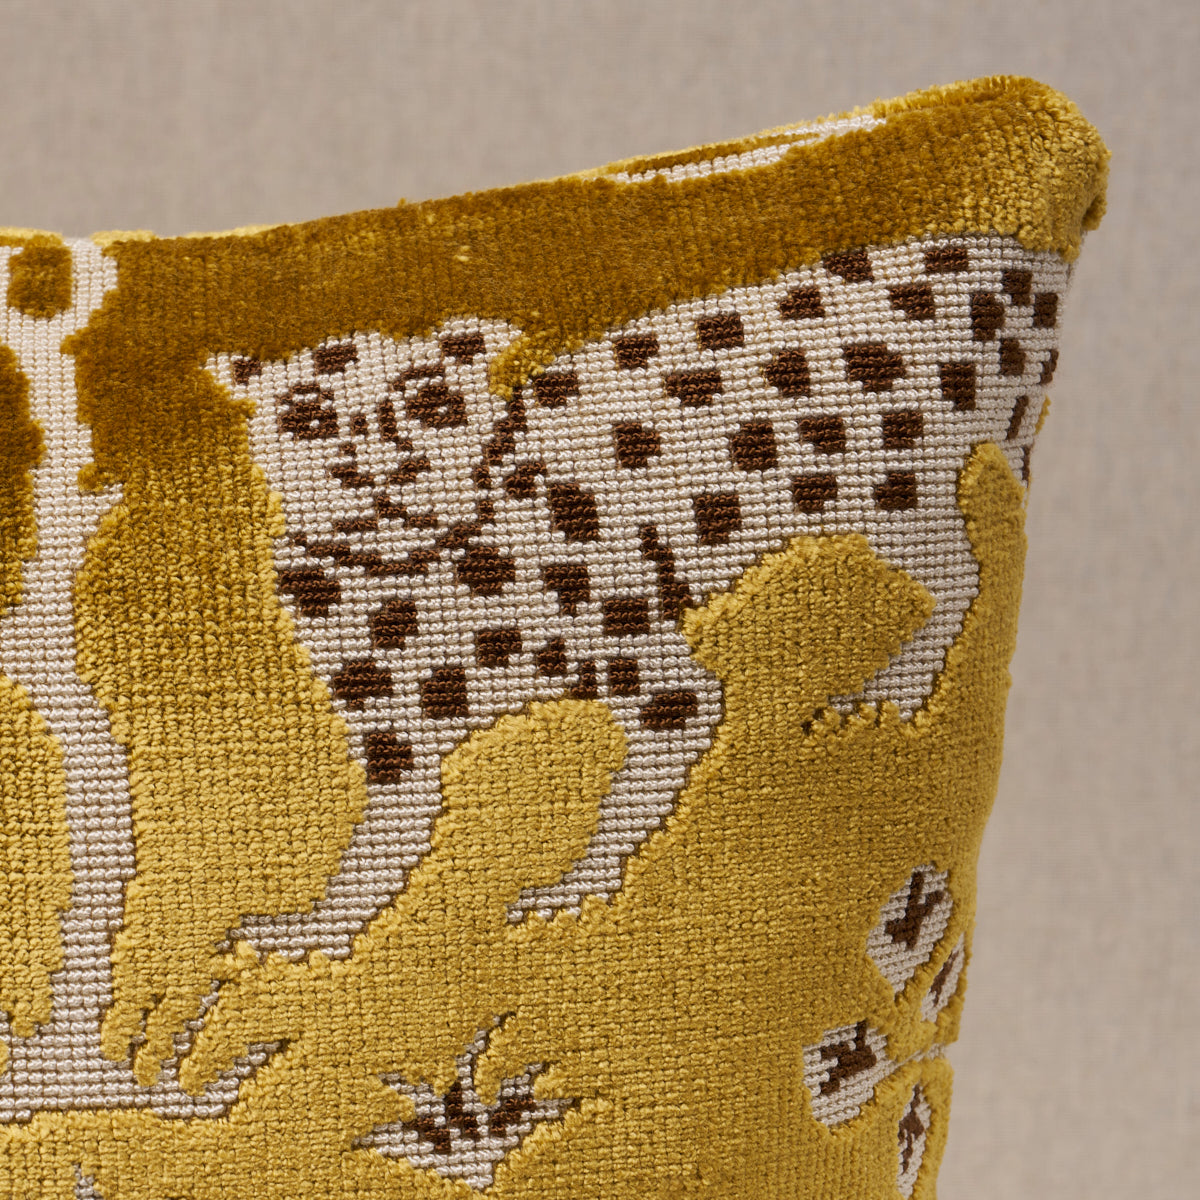 Woodland Leopard Velvet Pillow | Gold